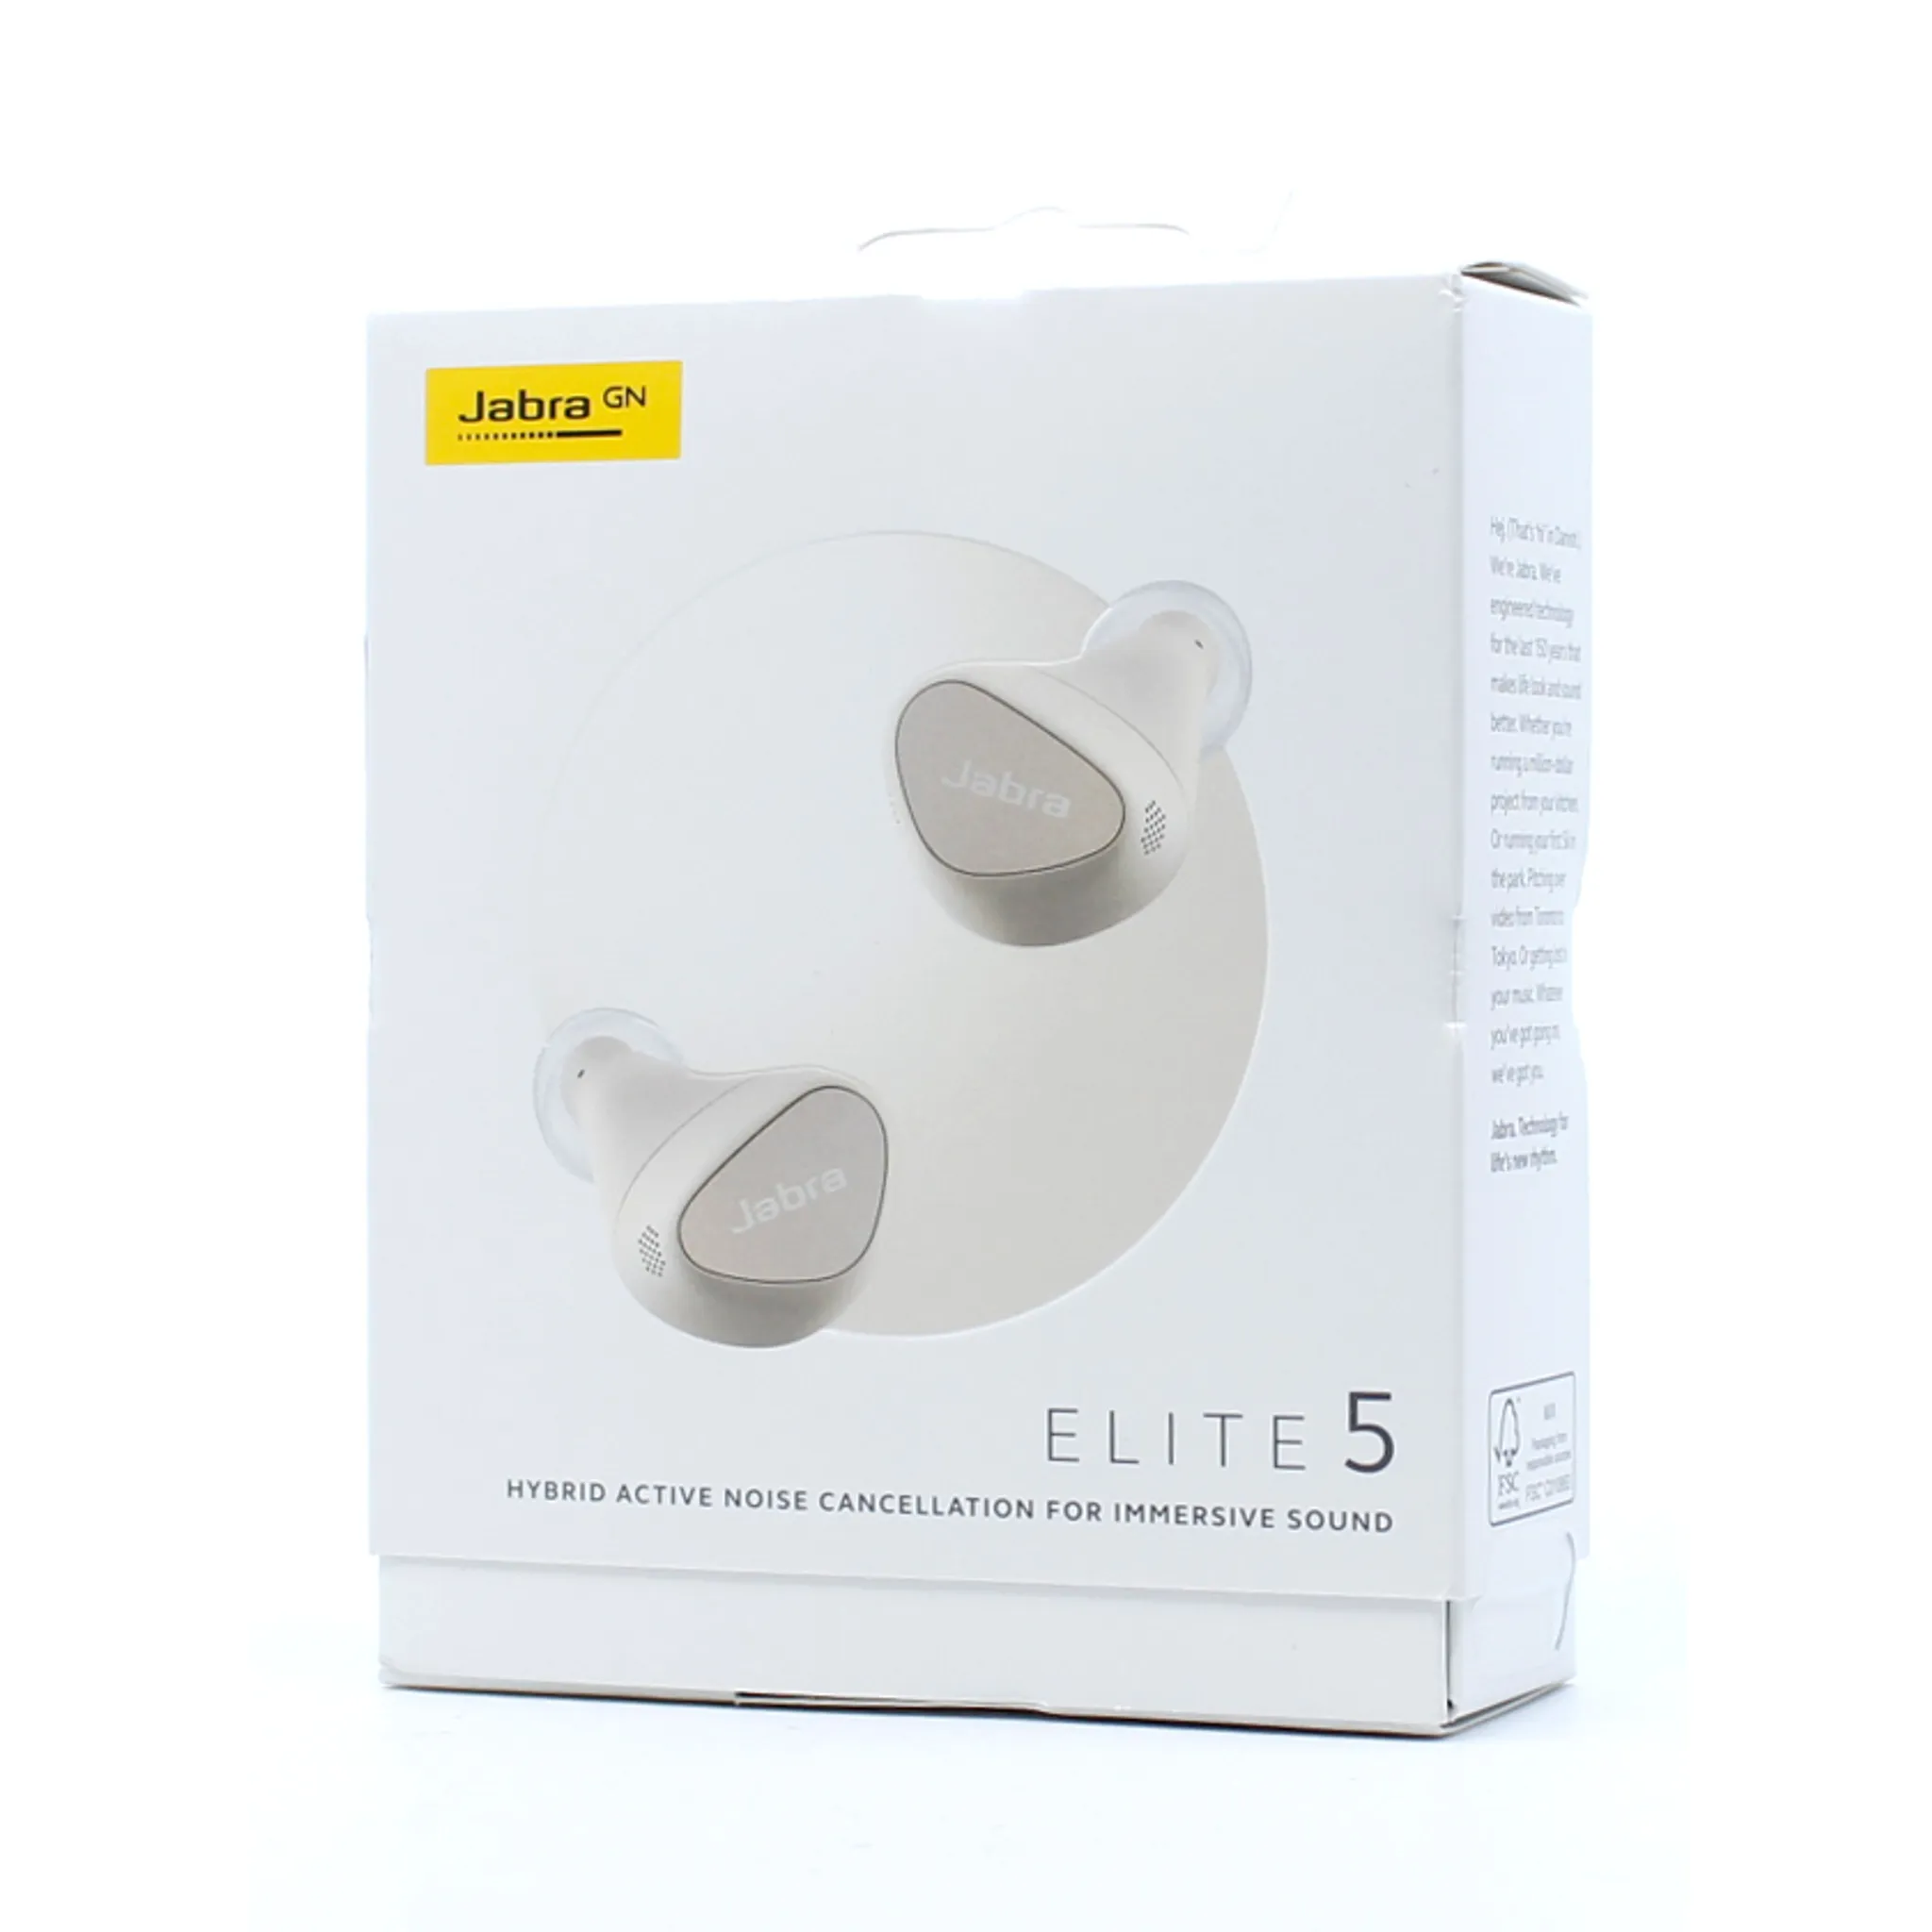 5 Elite Jabra mit In-Ear-Bluetooth-Kopfhörer